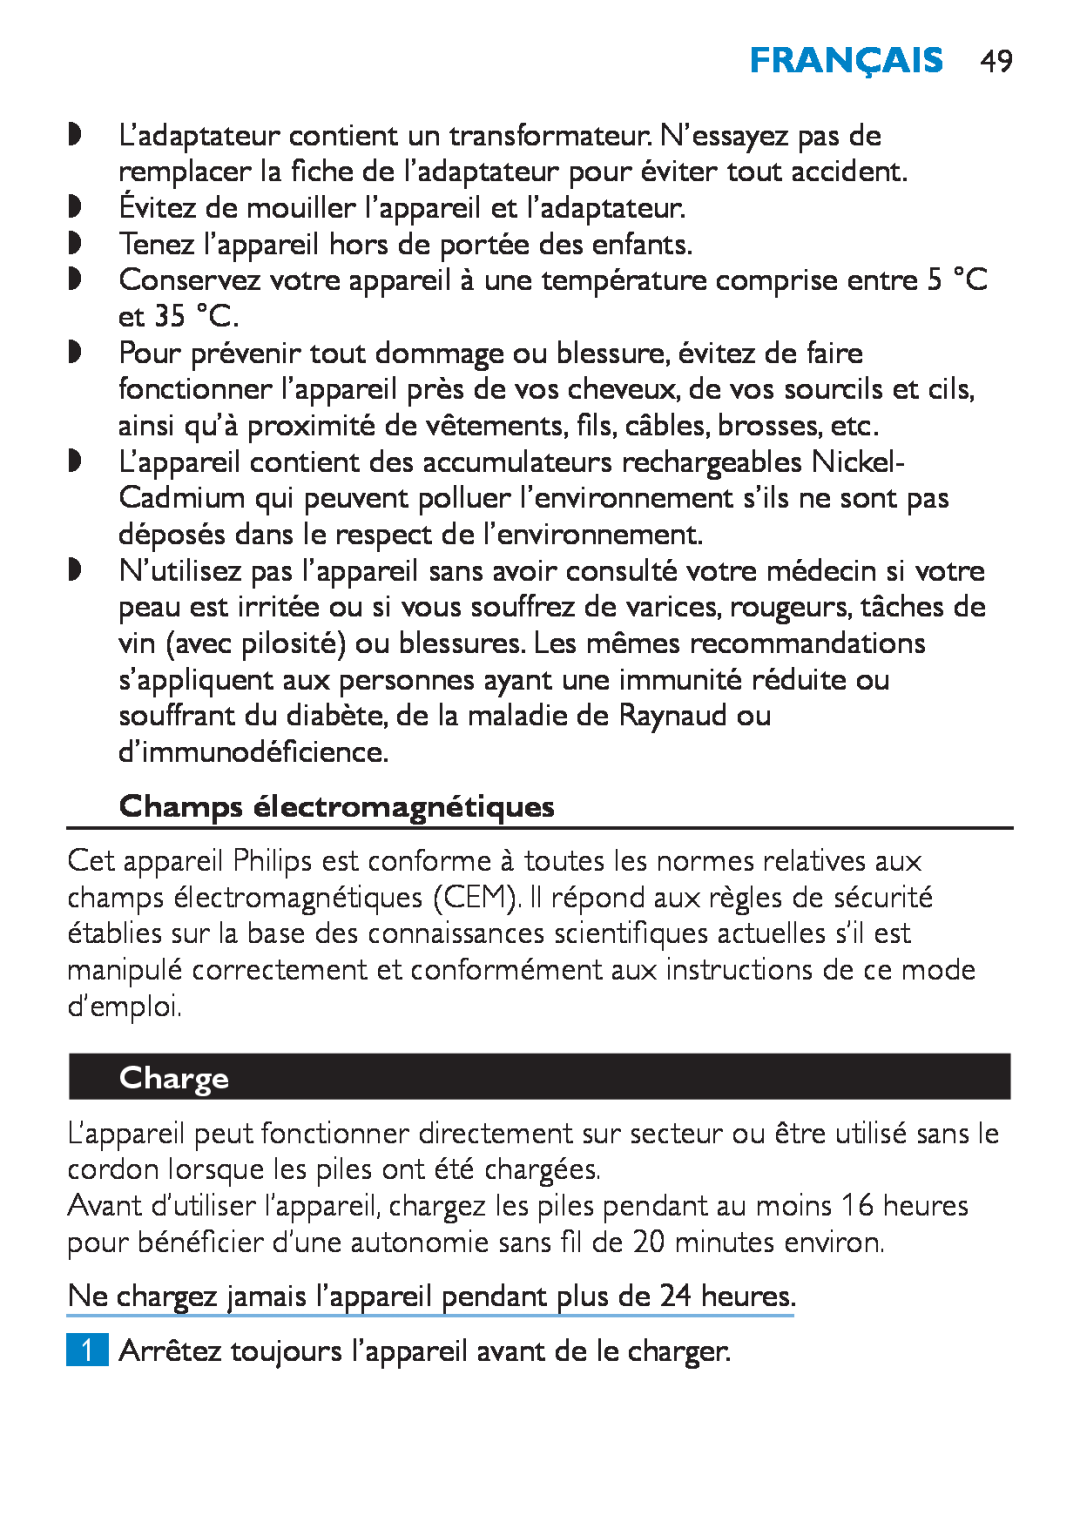 Philips HP6490 manual Français, Champs électromagnétiques, Charge 